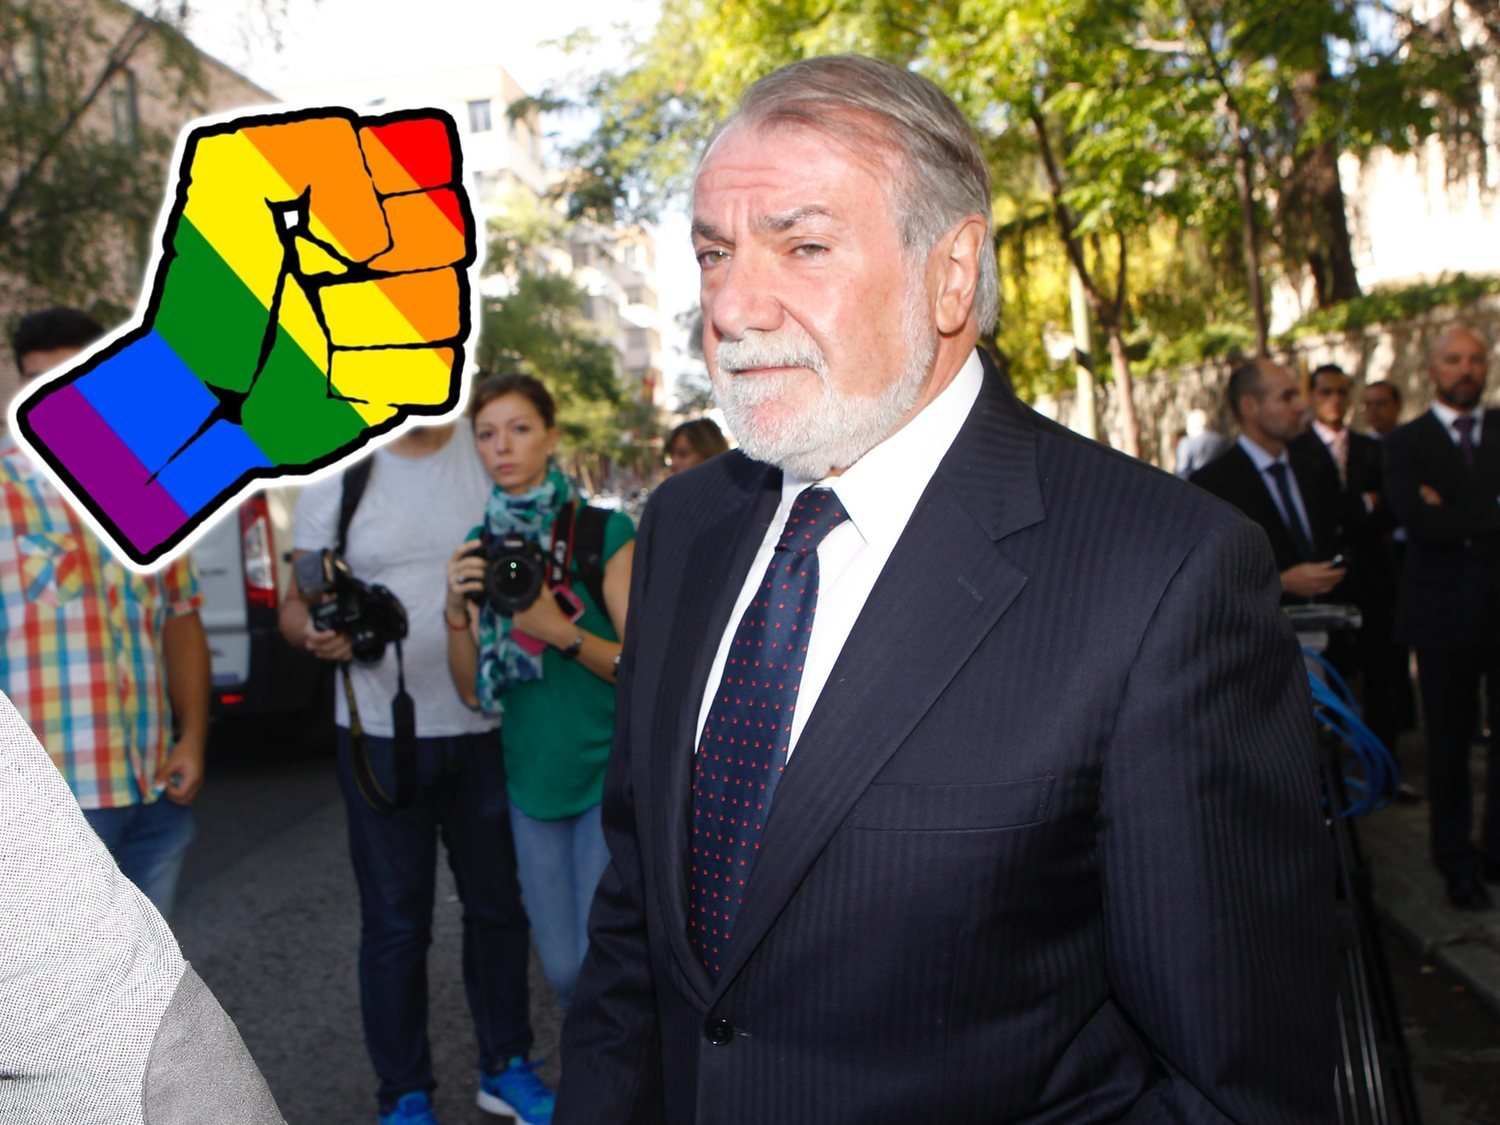 Mayor Oreja compara el matrimonio gay con el nazismo y añade: "Nos lleva a la catástrofe"